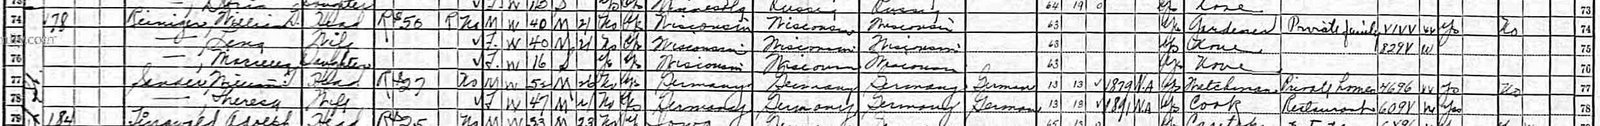 [1930+Census+William+G+Reiniger+family_CROP.jpg]